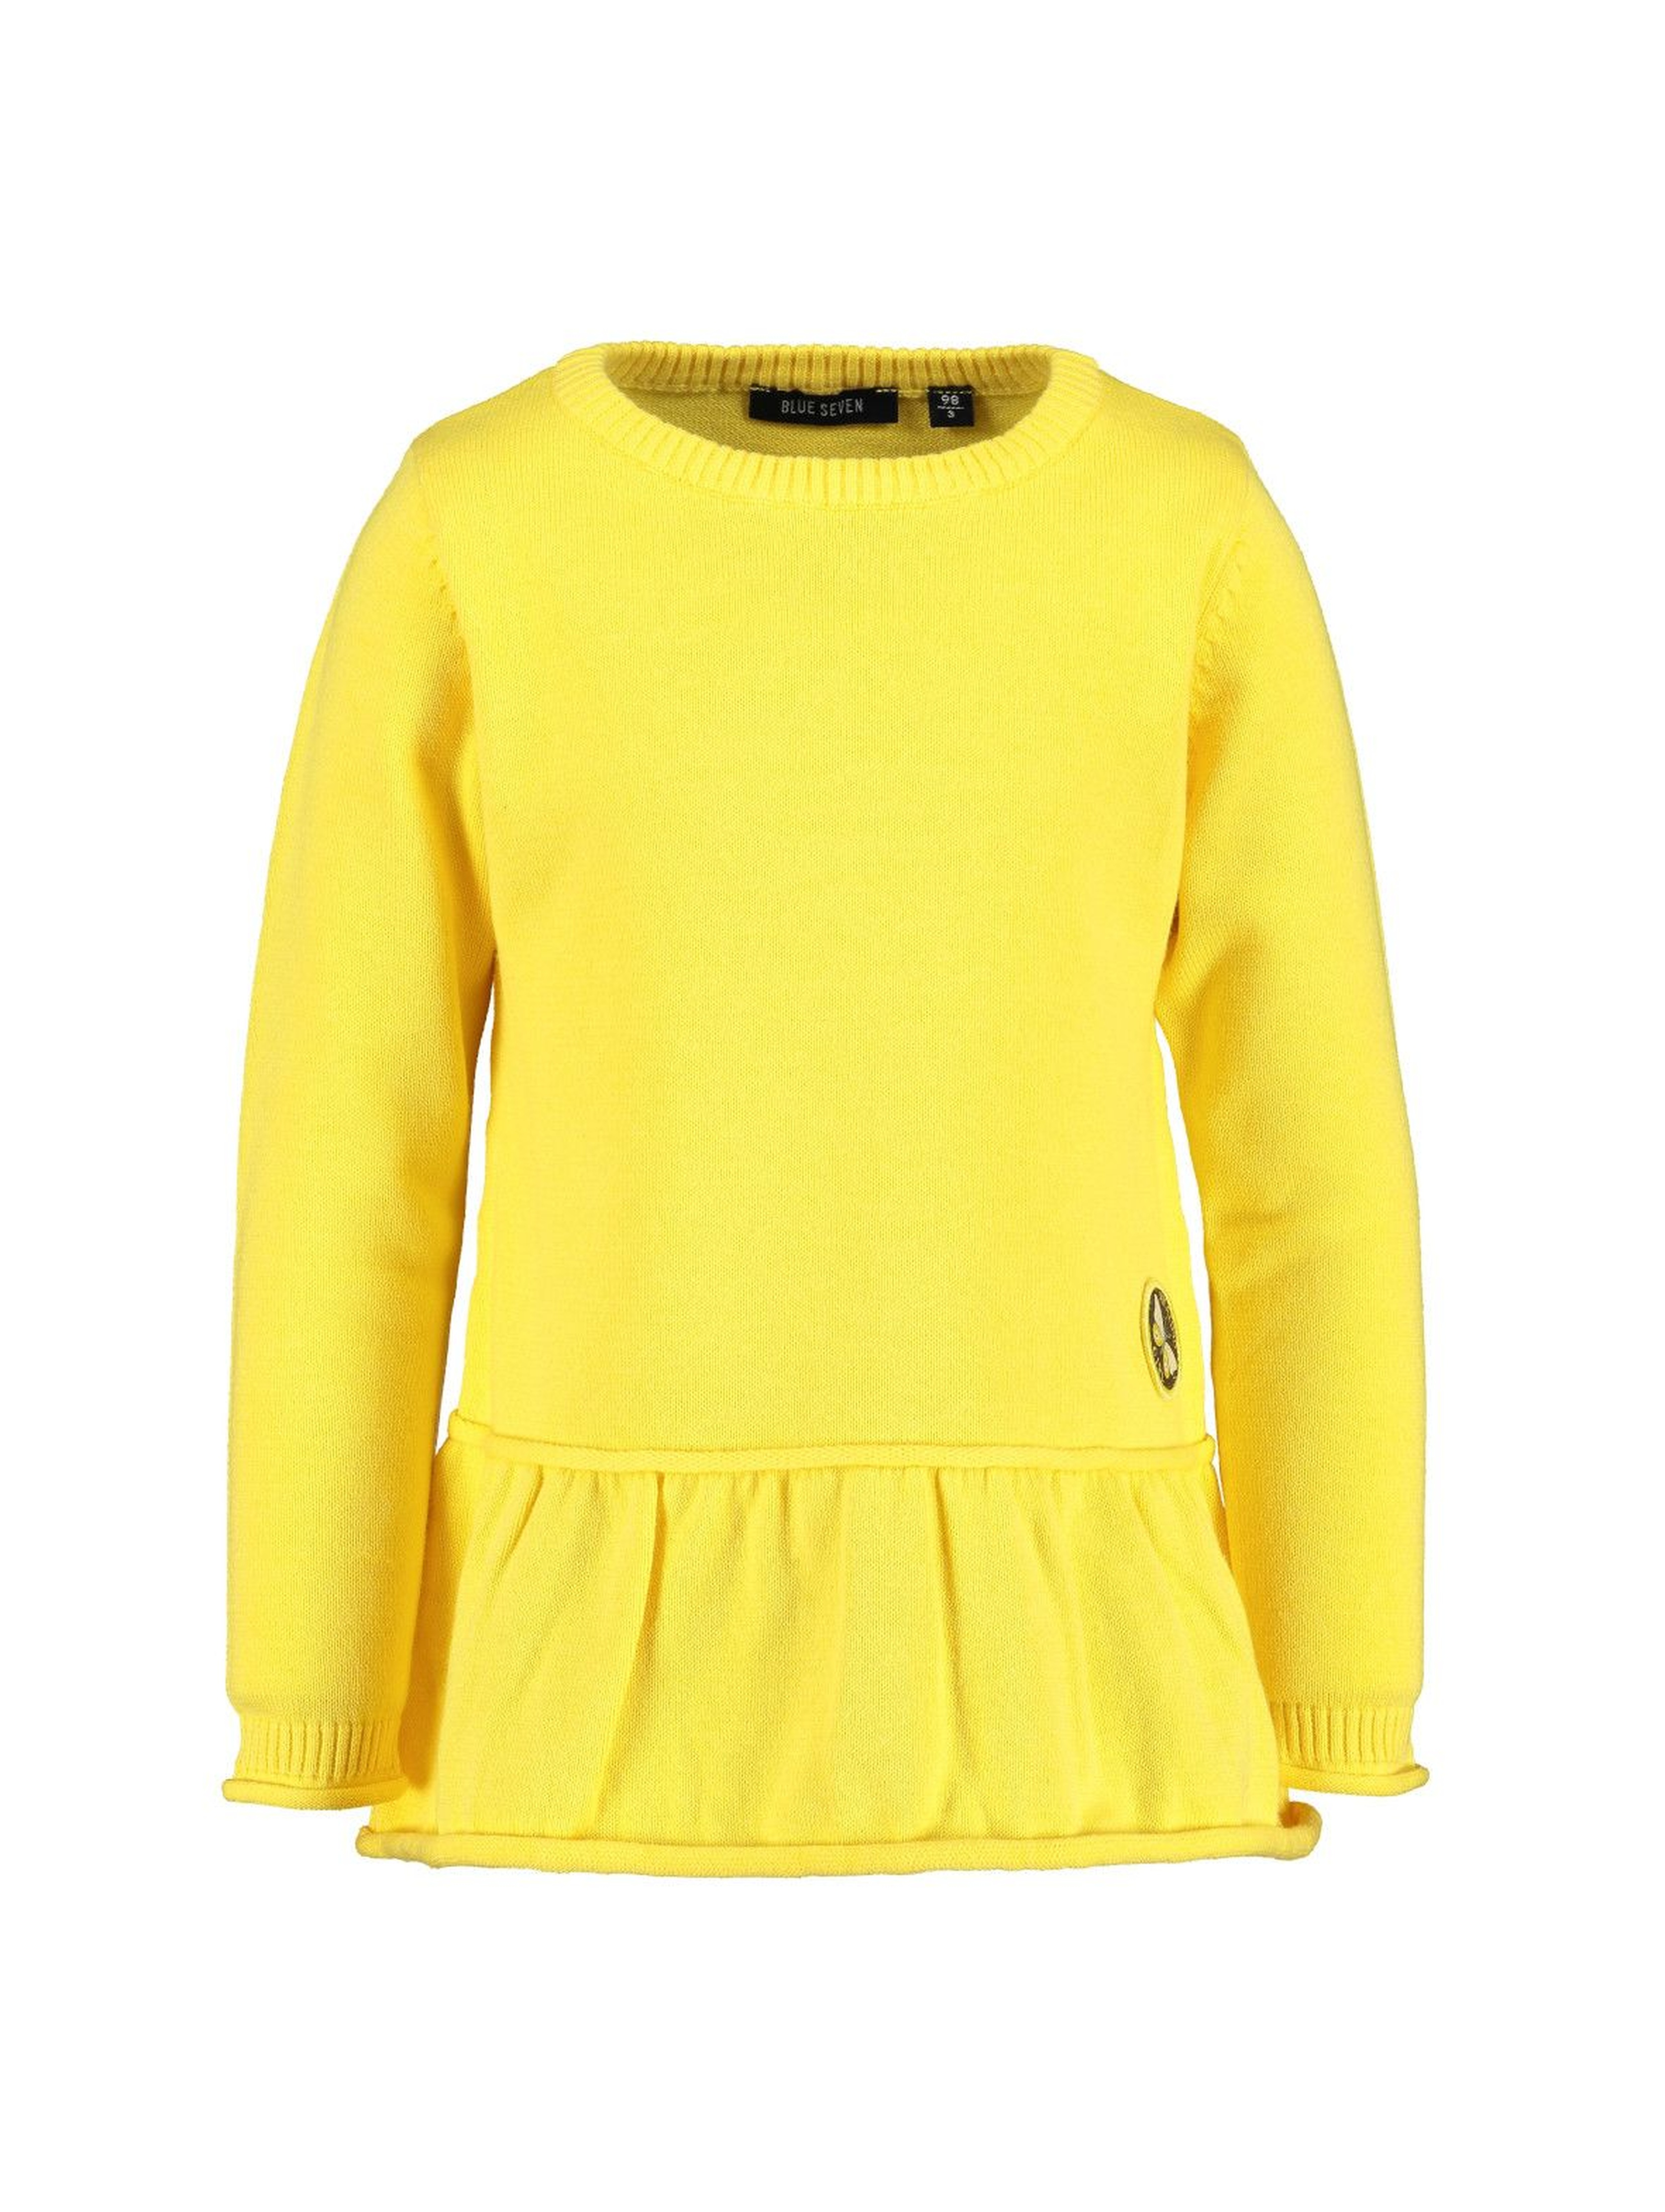 Sweter dziewczęcy - żółty